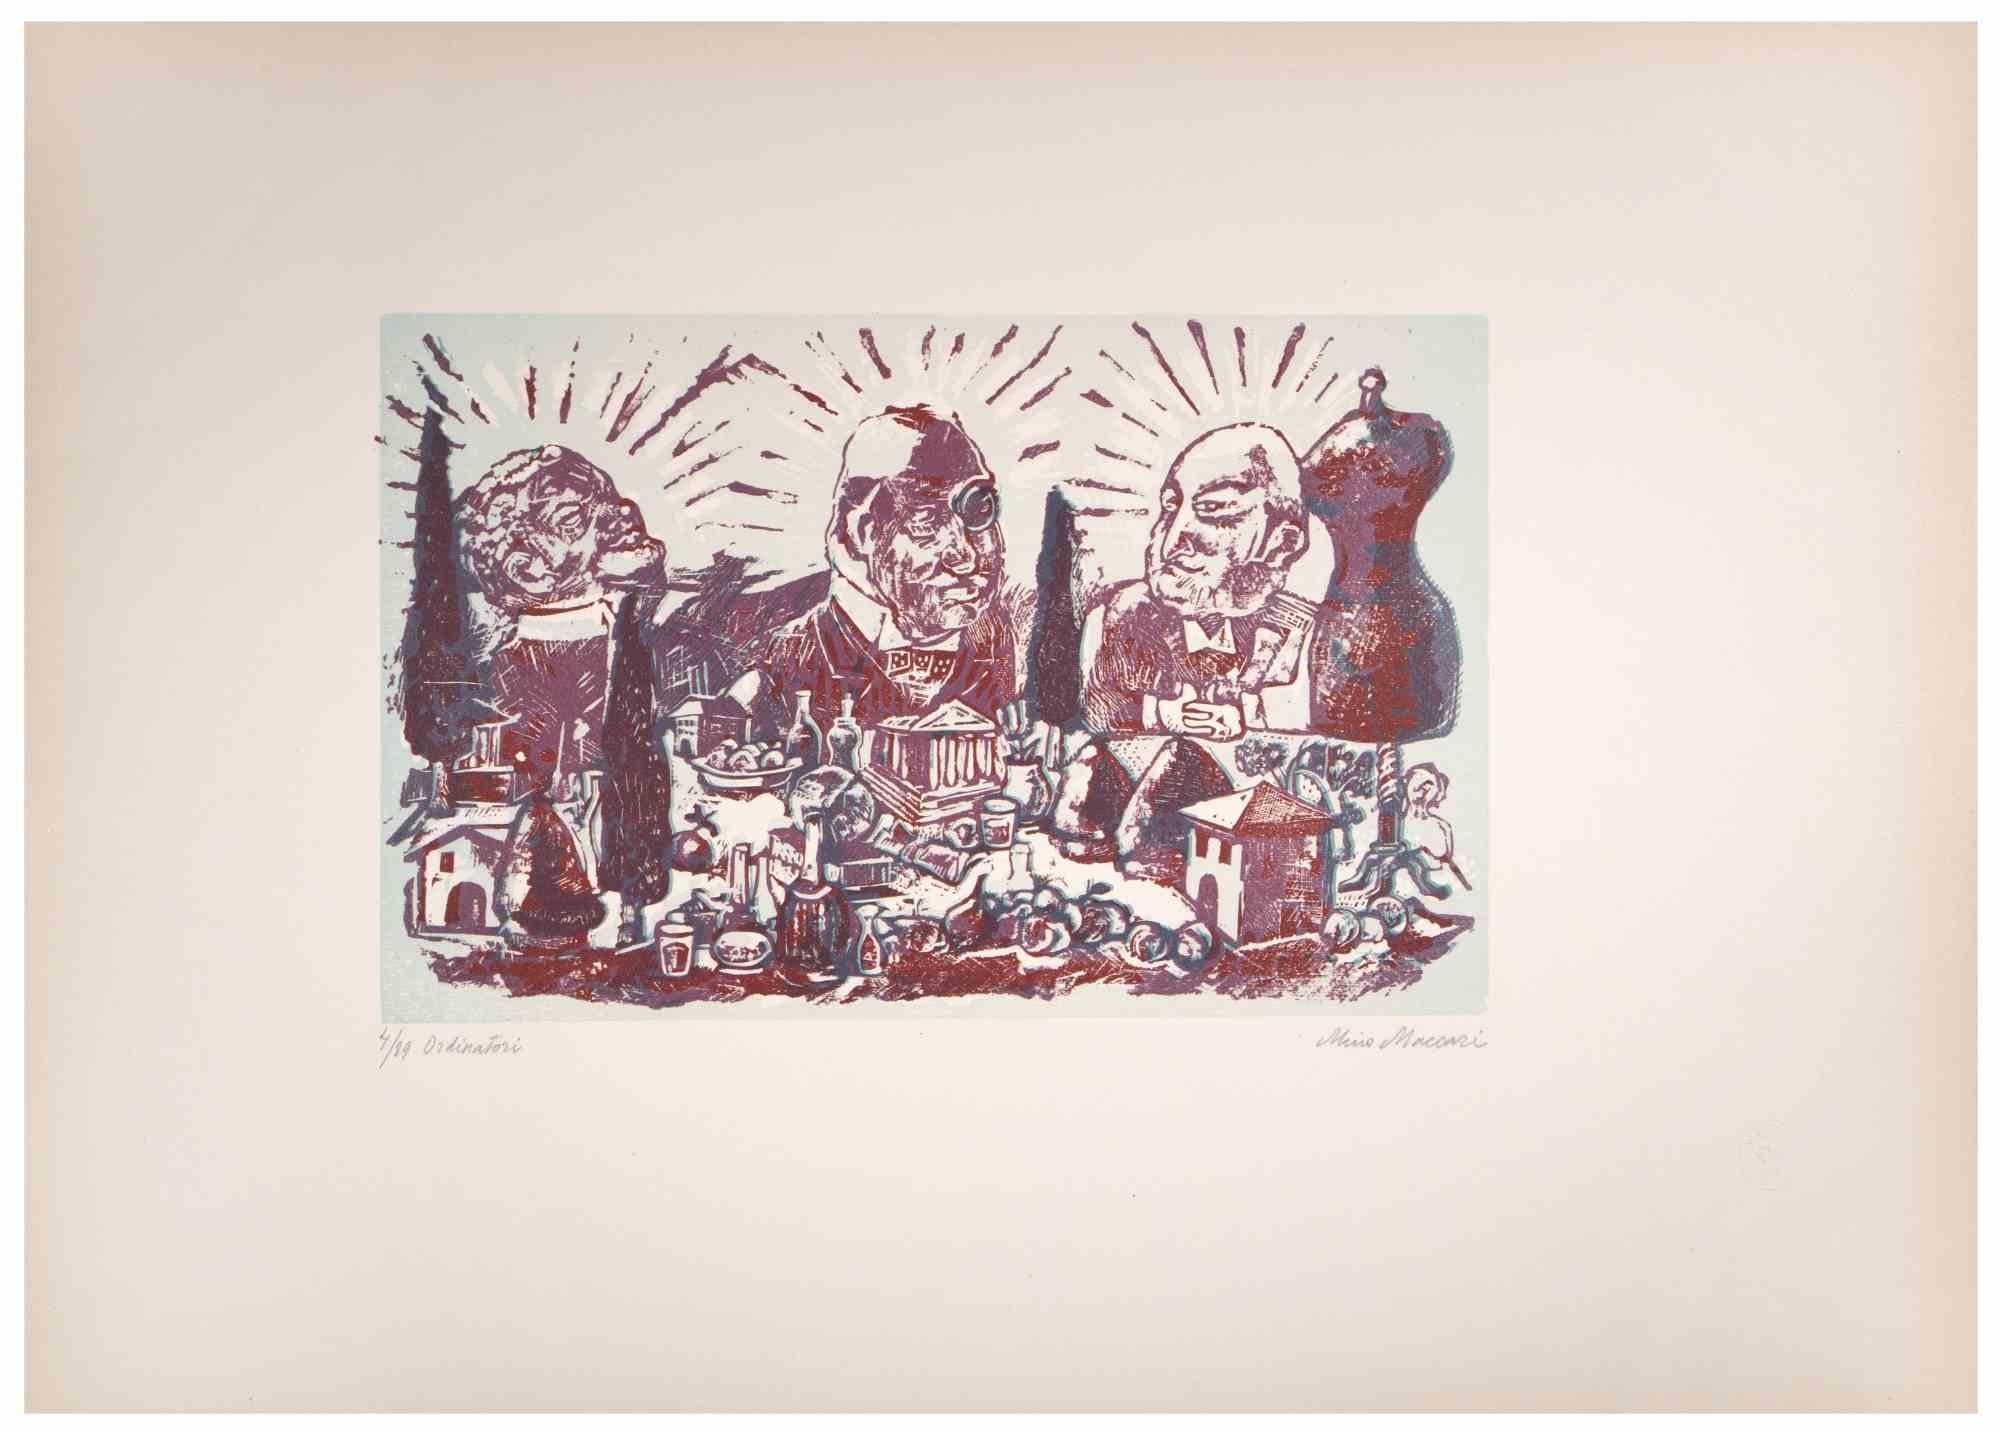 Ordinatori ist ein Kunstwerk von Mino Maccari (1924-1989) aus der Mitte des 20. Jahrhunderts.

Farbiger Holzschnitt auf Papier. Unten handsigniert, nummeriert 4/89 Exemplare und am linken Rand betitelt.

Gute Bedingungen.

Mino Maccari (Siena,